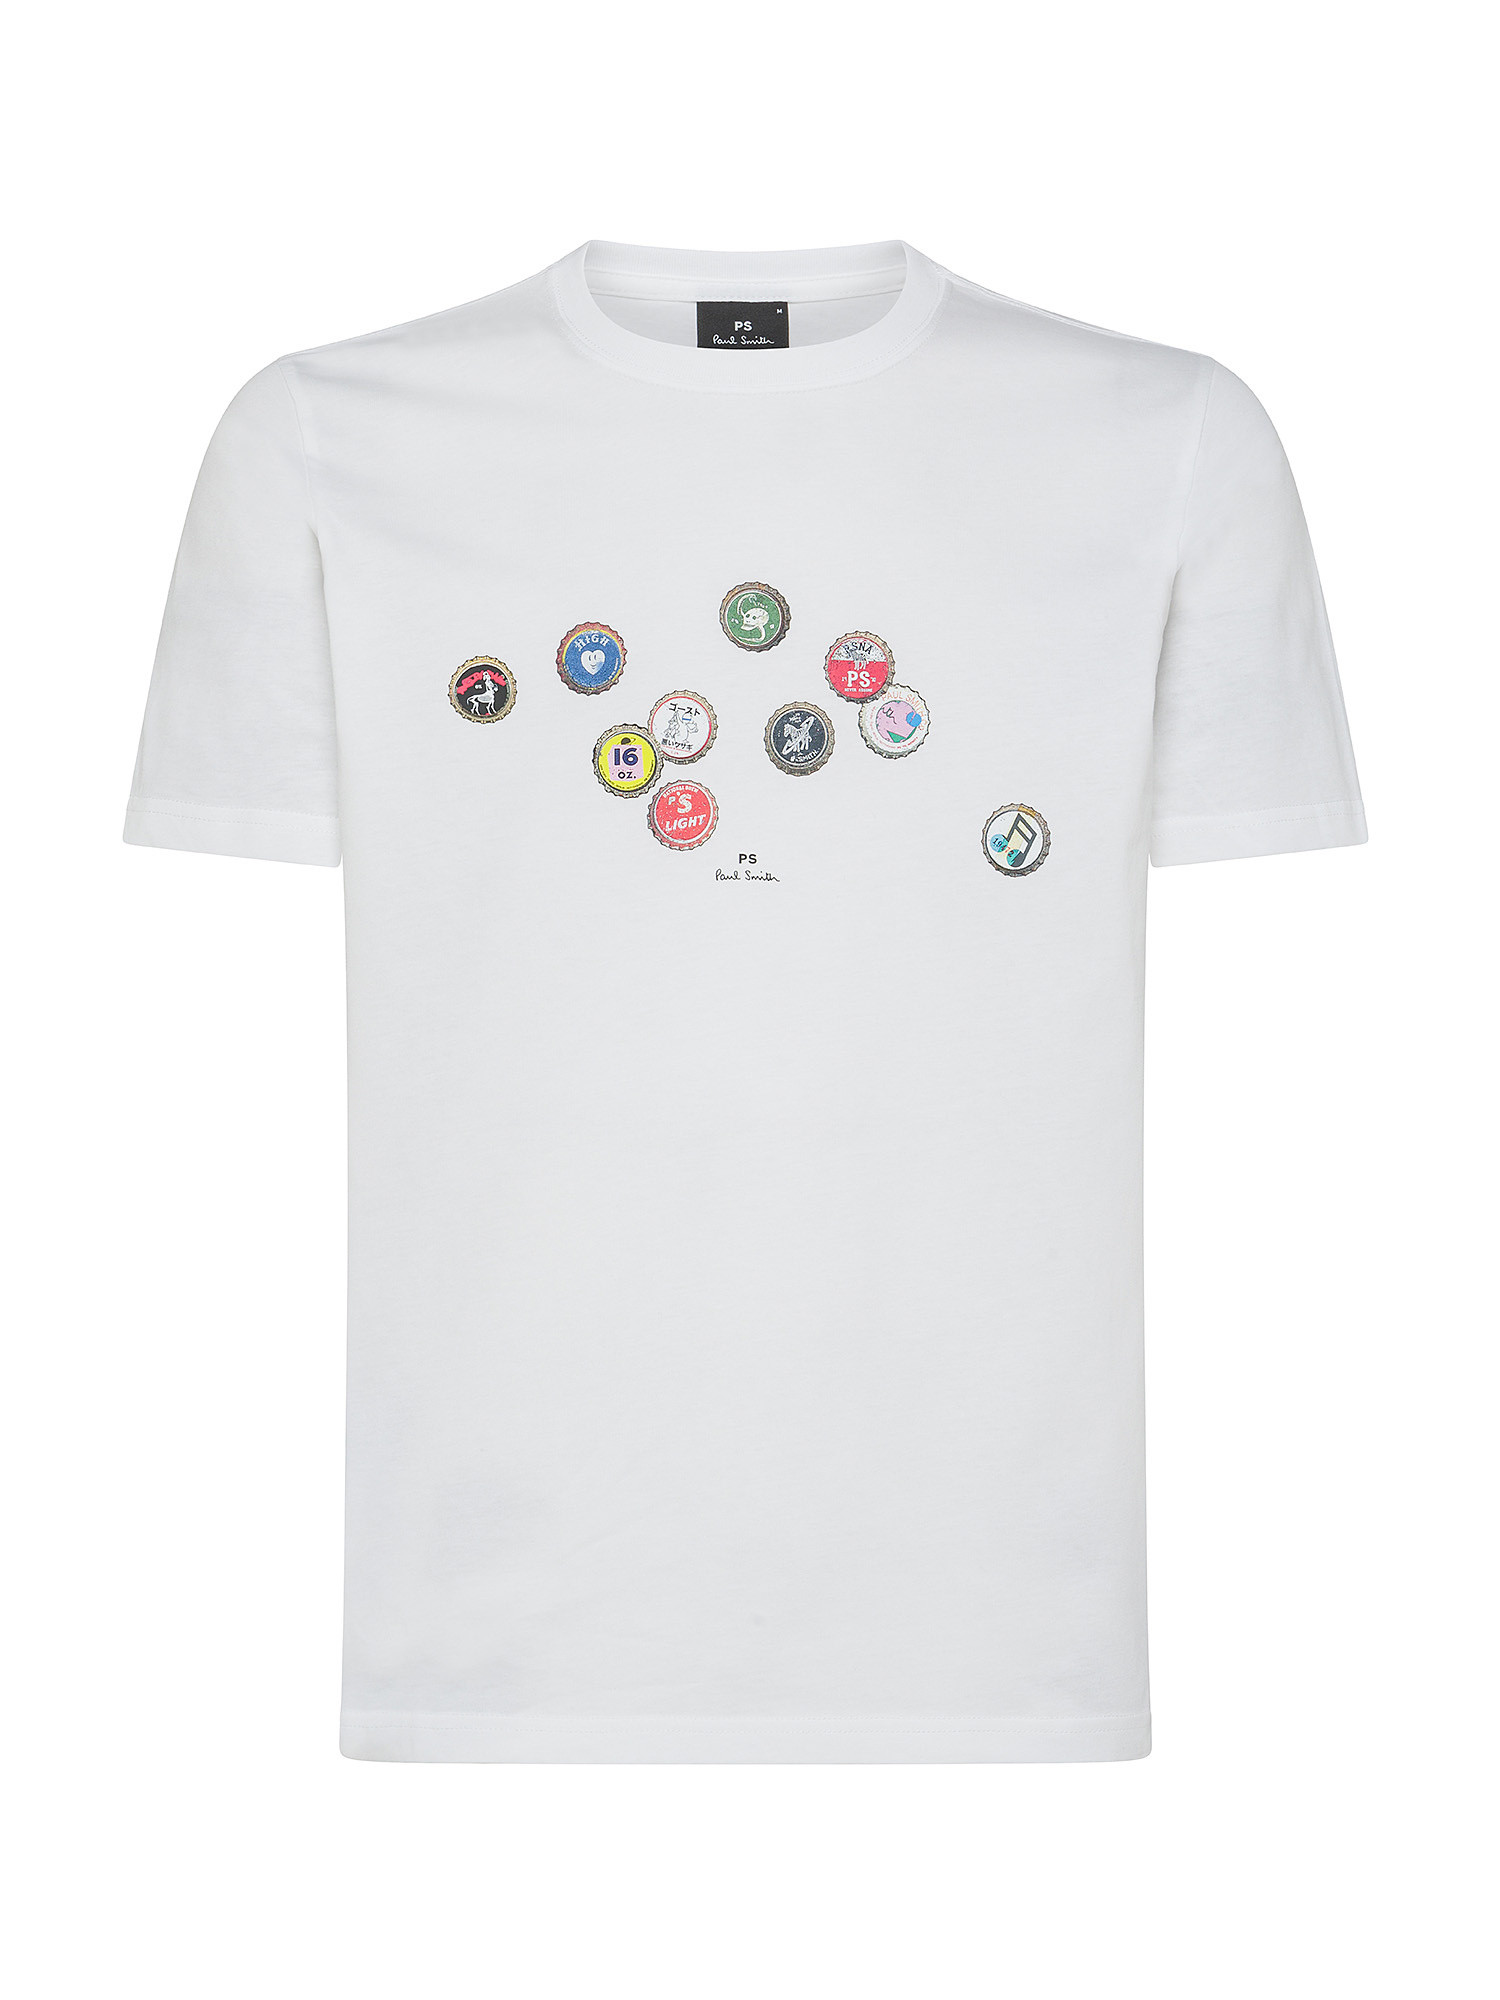 Paul Smith - T-shirt in cotone con stampa tappi di bottiglia, Bianco, large image number 0